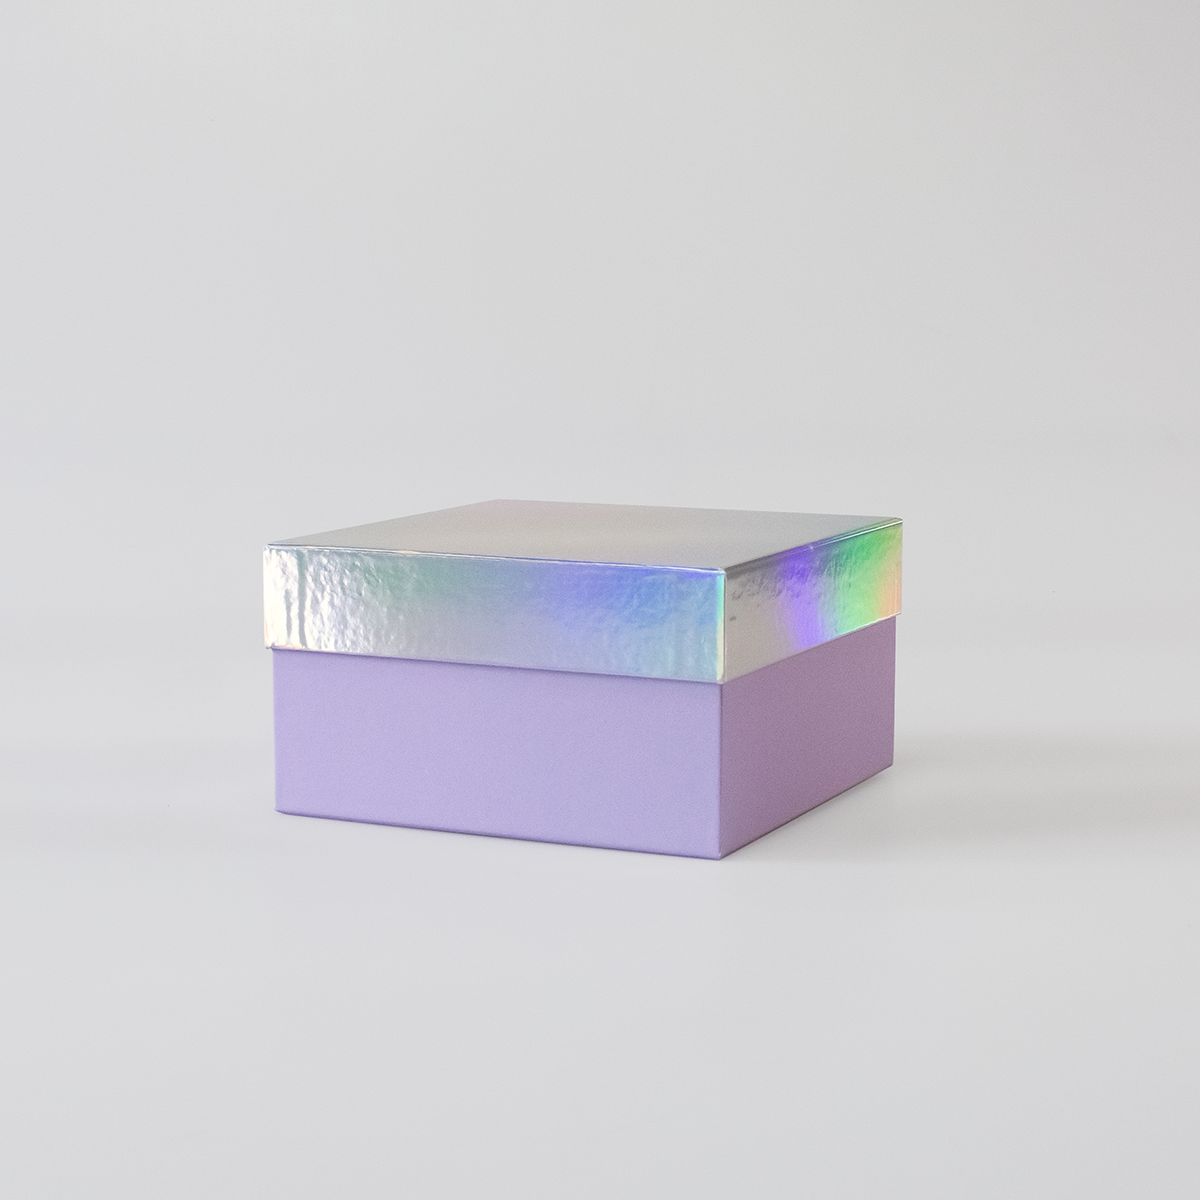 Подарочная коробка крышка-дно, 19 x 19 x 10,5 см. "Блеск", разноцветный, лавандовый